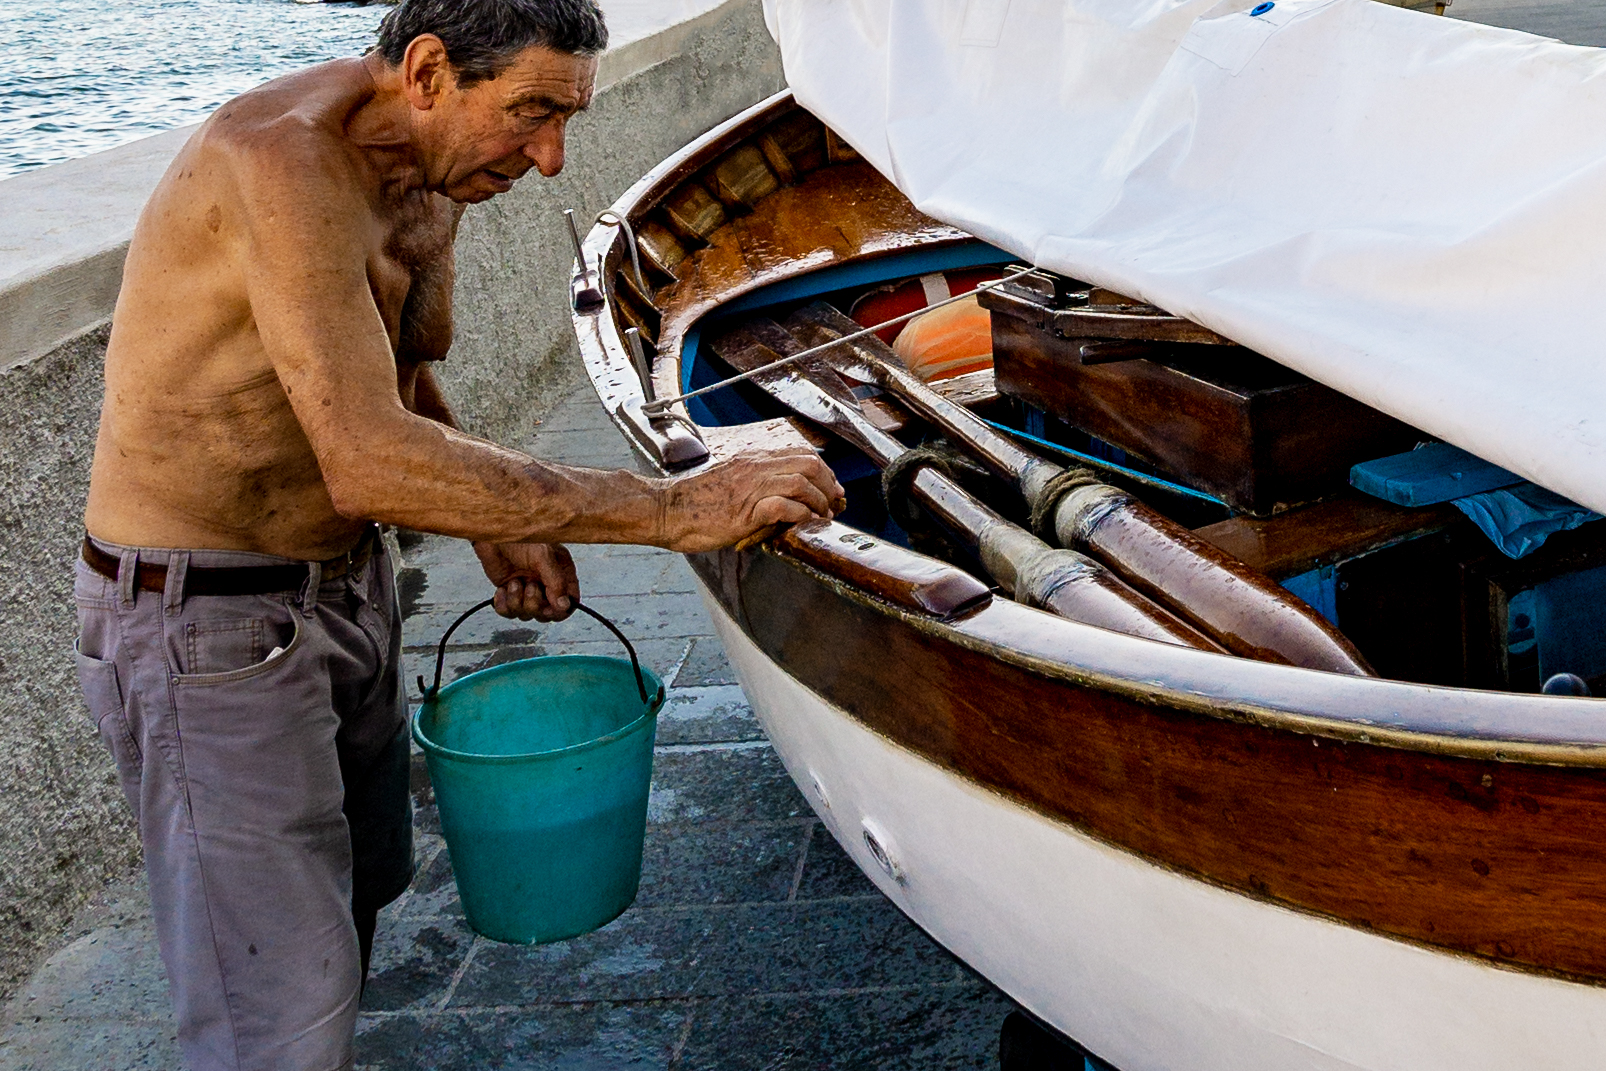 Il pescatore malinconico lava la sua barca...